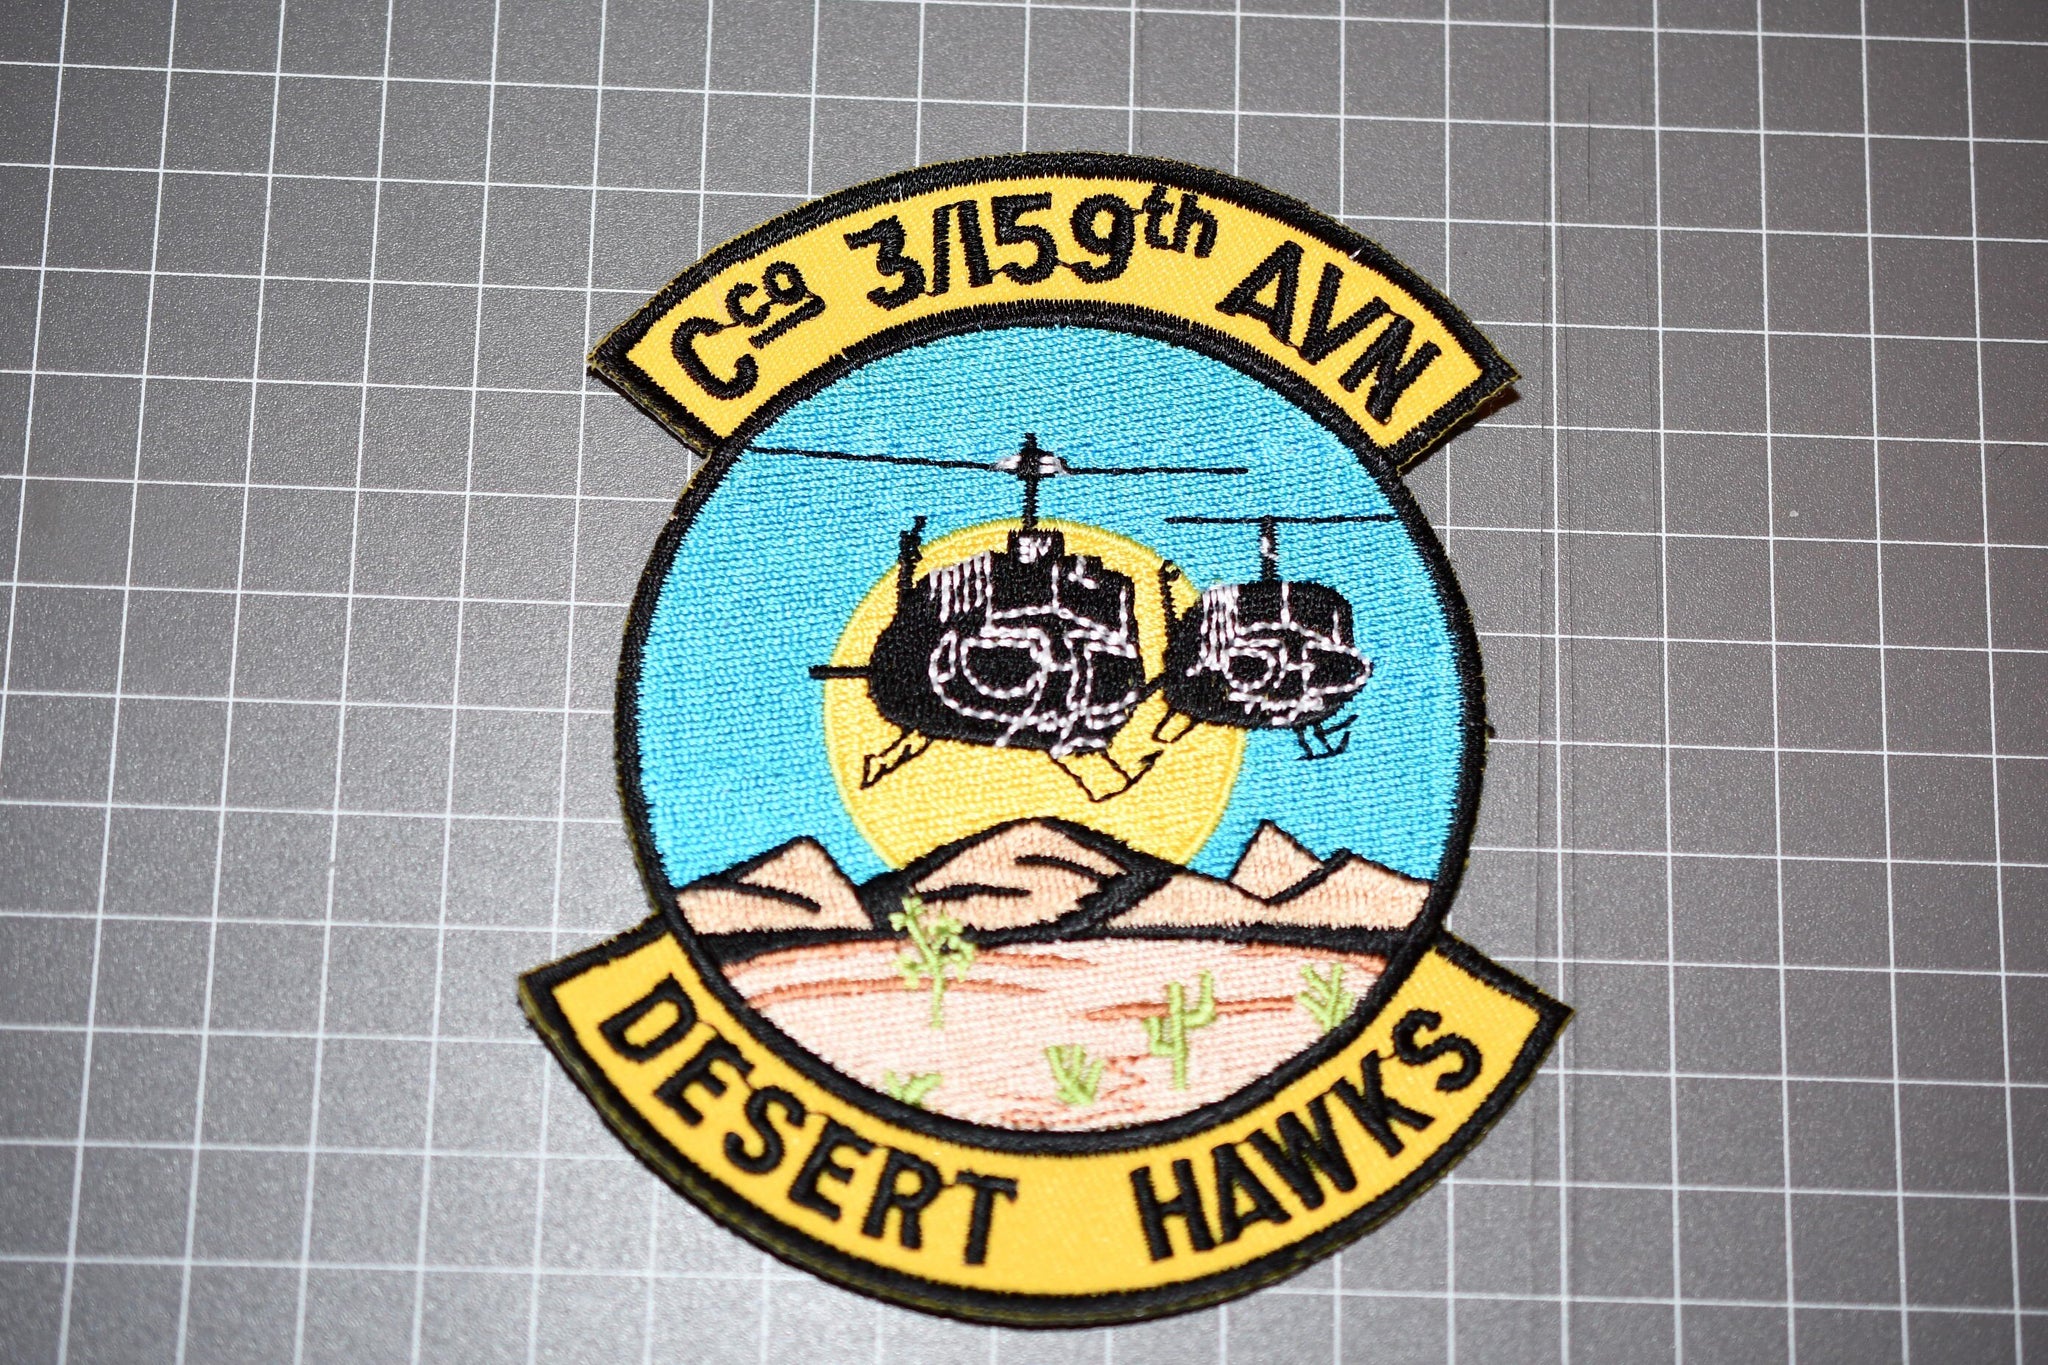 US Army Aviation Cco 3/159th "Desert Hawks" (B10-069)